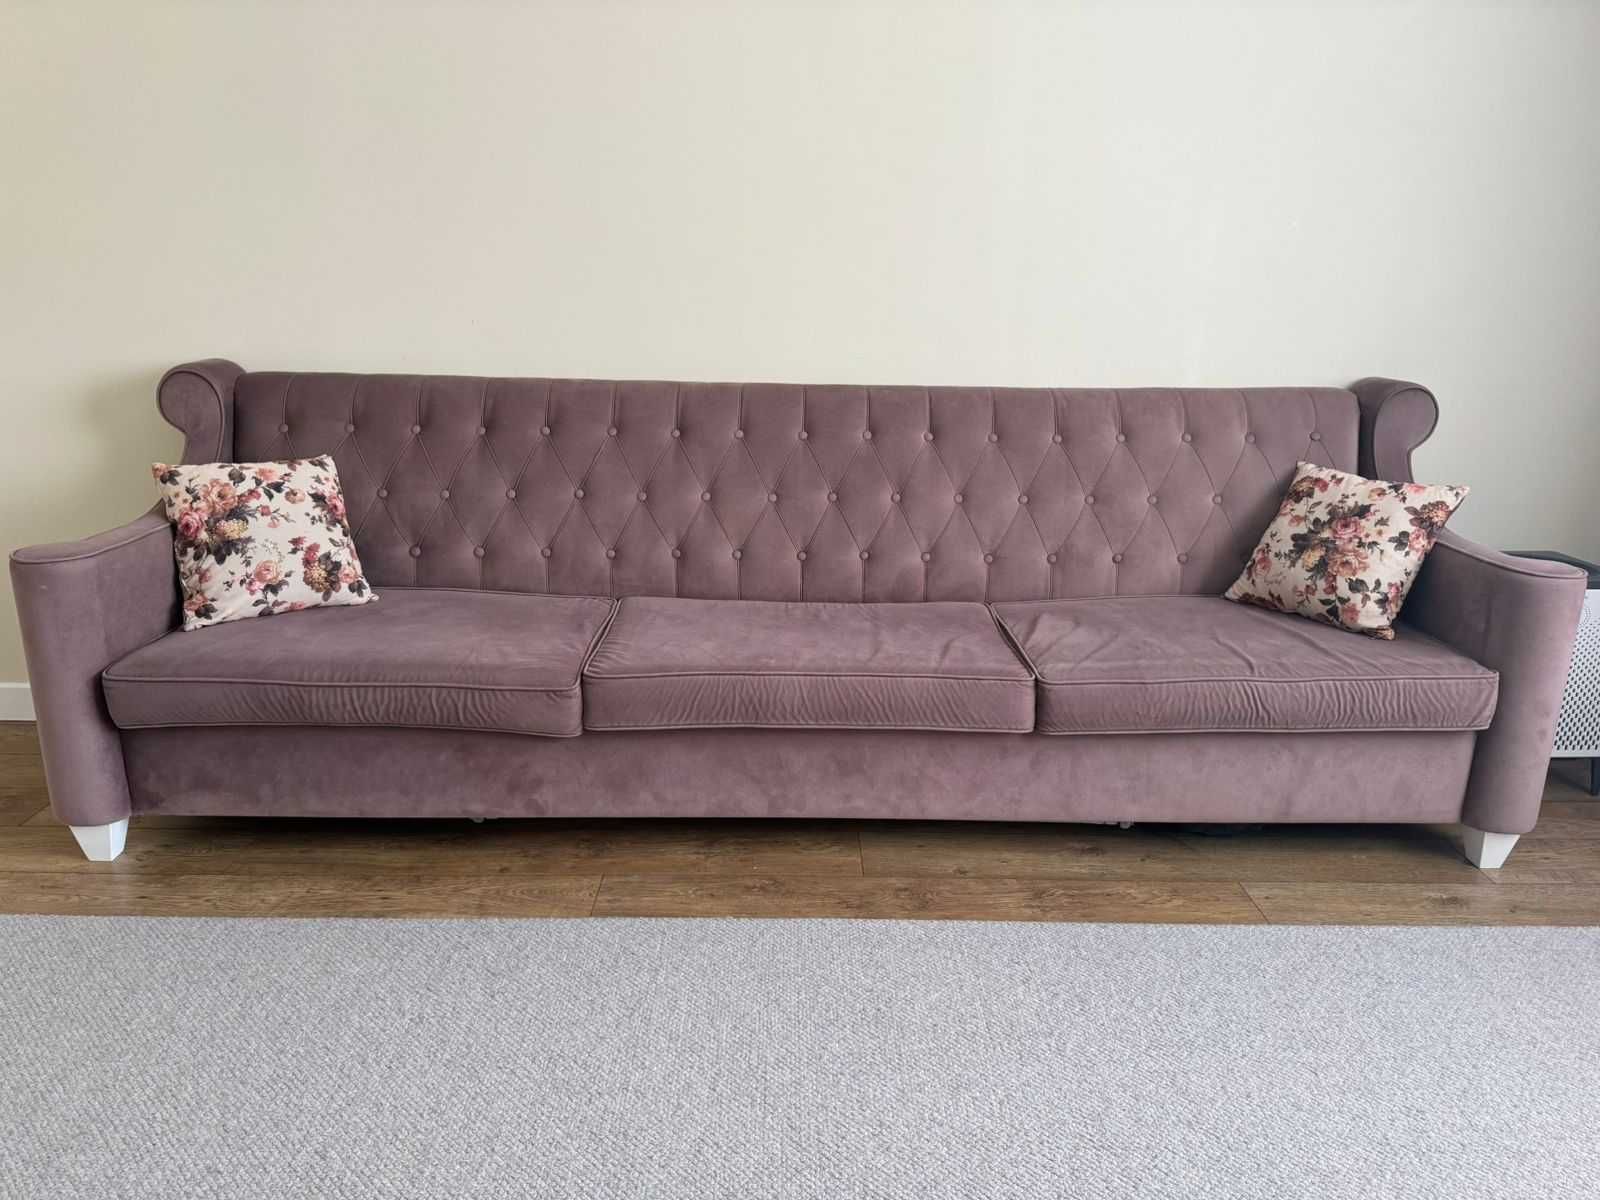 Продам диван, размер 3 метра. Был выполнен на заказ